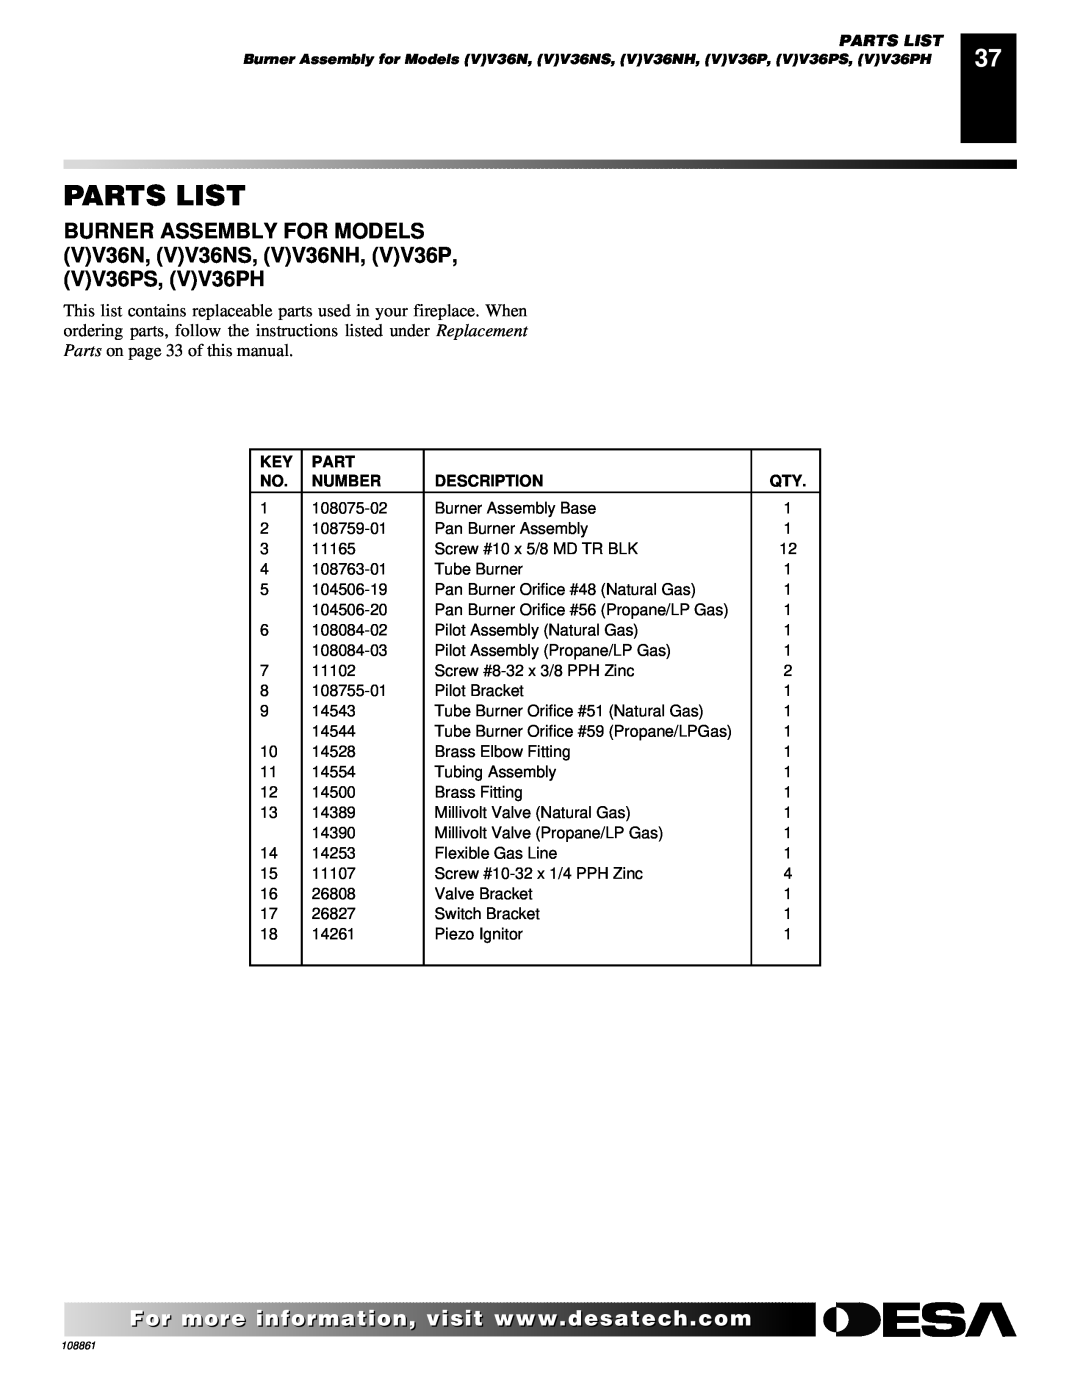 Desa CHDV47NR, (V)V36N, CHDV47PR installation manual Parts List, Number, Description 